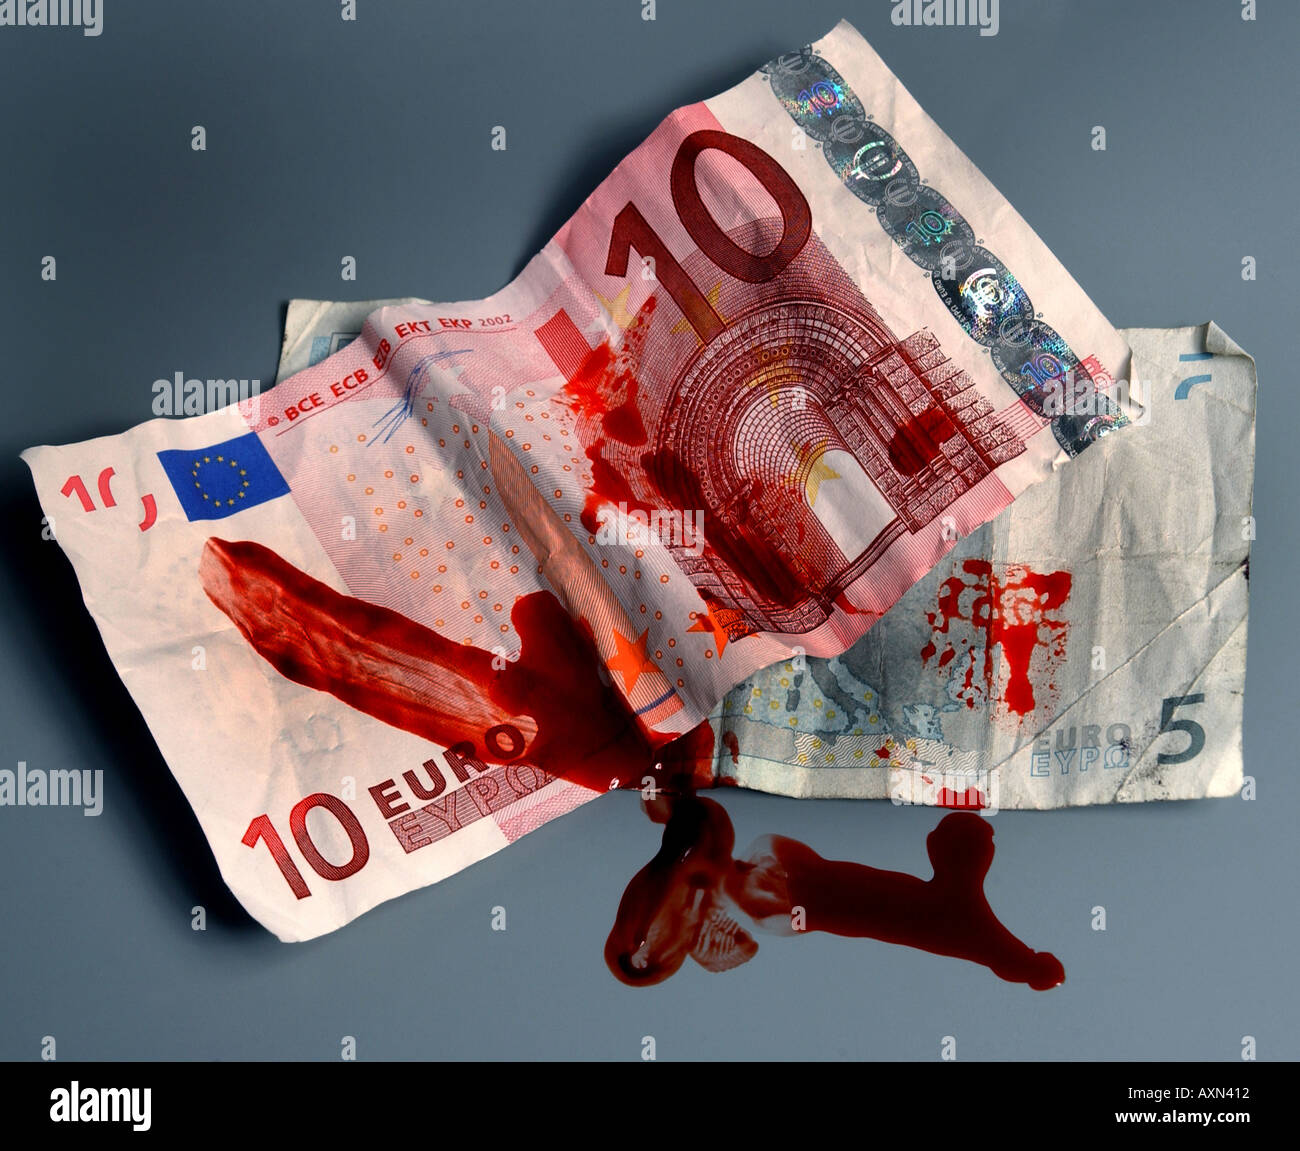 L'Euro de l'argent avec du sang Banque D'Images